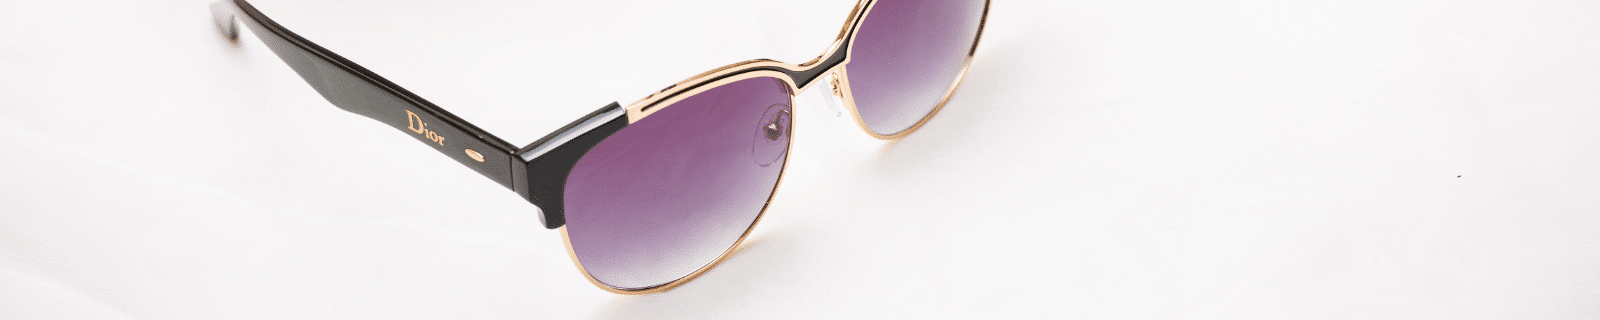 dior sunglasses with white dior box